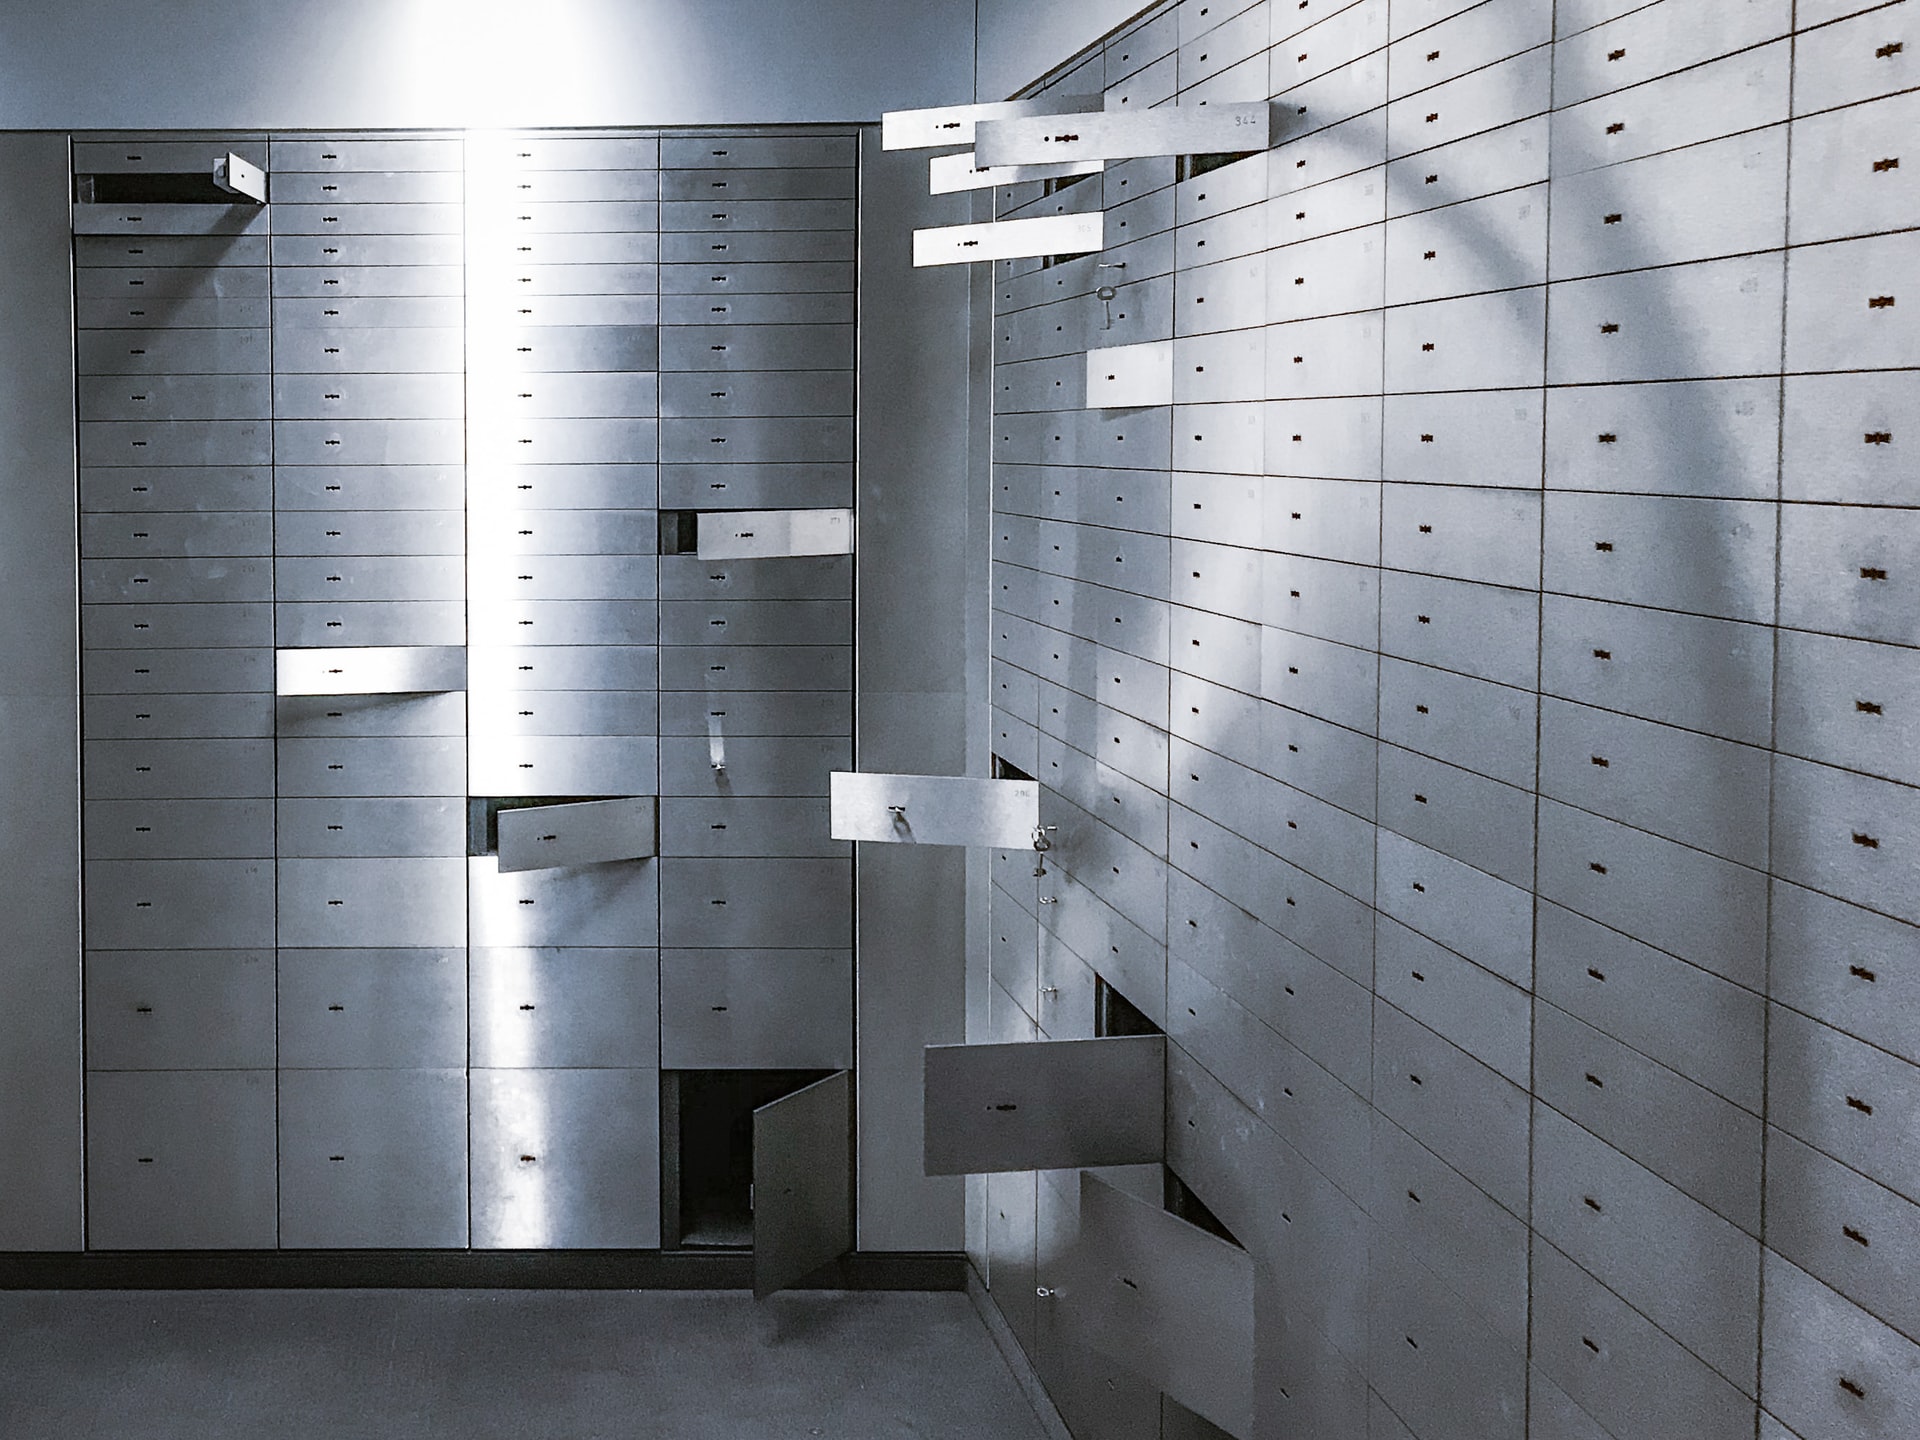 digital vault -- inside a bank vault